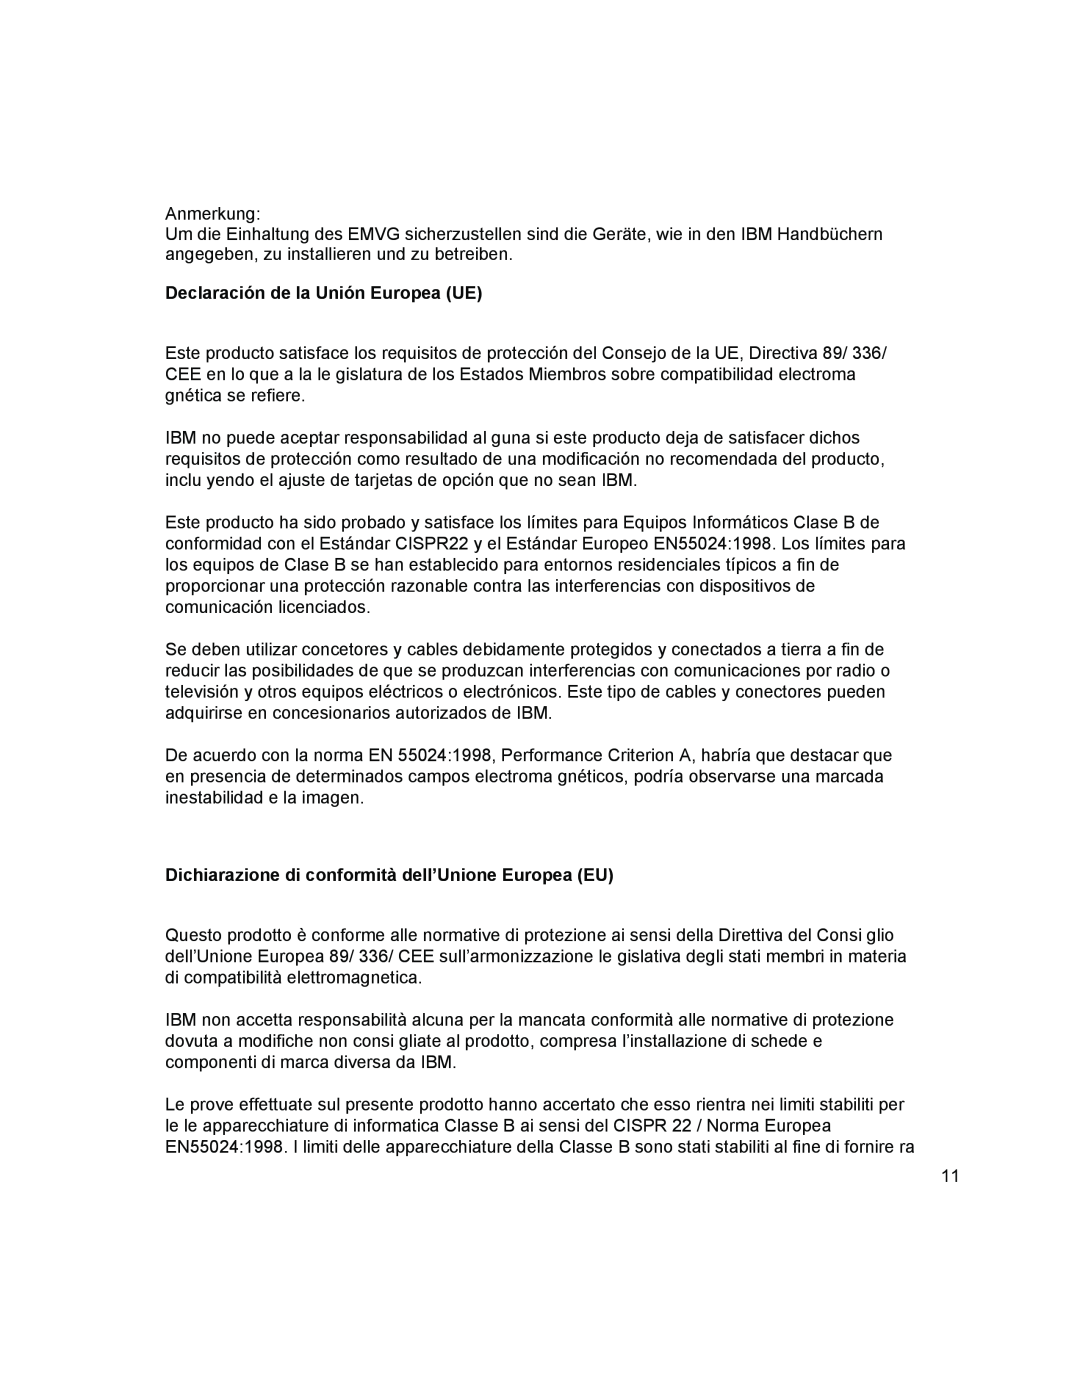 IBM T541A manual Declaración de la Unión Europea UE, Dichiarazione di conformità dell’Unione Europea EU 